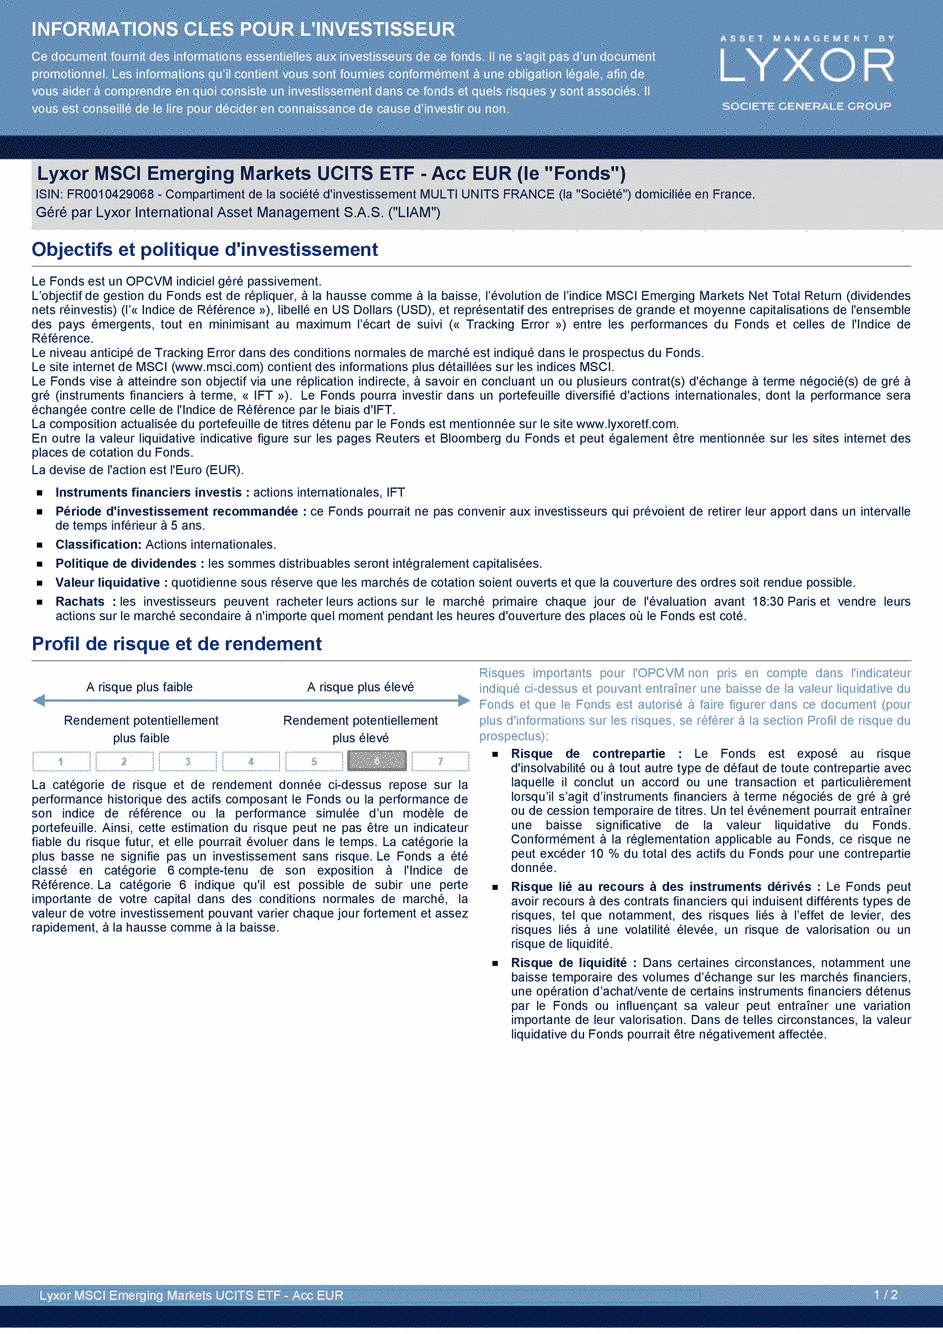 DICI Lyxor MSCI Emerging Markets UCITS ETF - Acc EUR - 19/02/2021 - Français